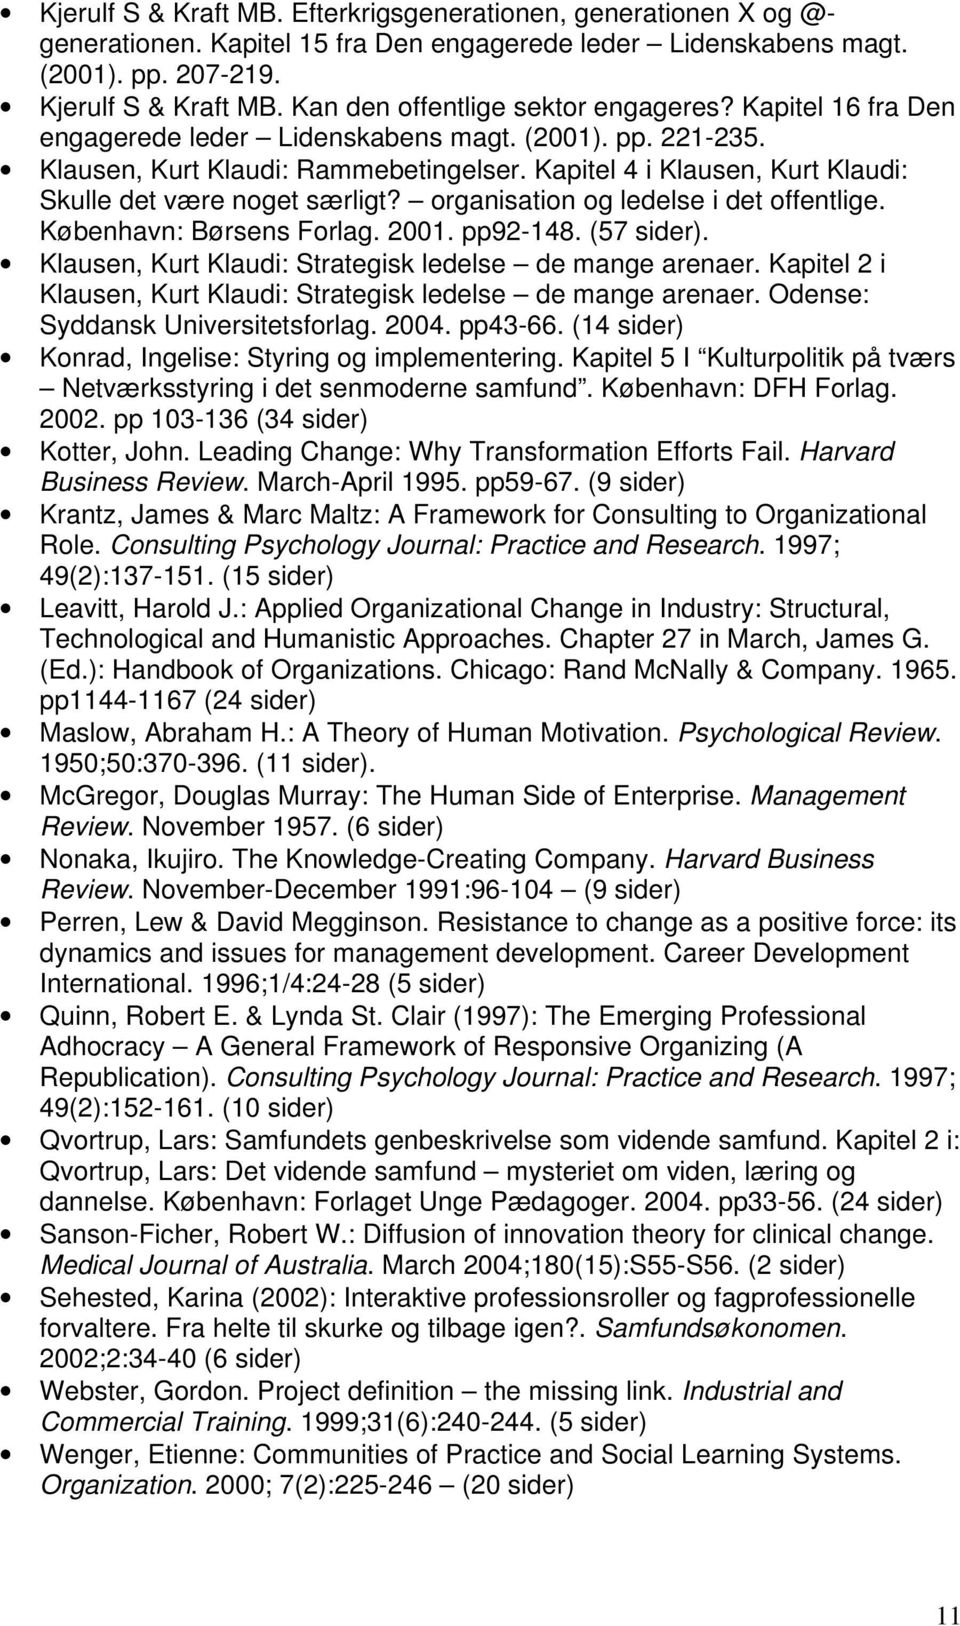 Kapitel 4 i Klausen, Kurt Klaudi: Skulle det være noget særligt? organisation og ledelse i det offentlige. København: Børsens Forlag. 2001. pp92-148. (57 sider).